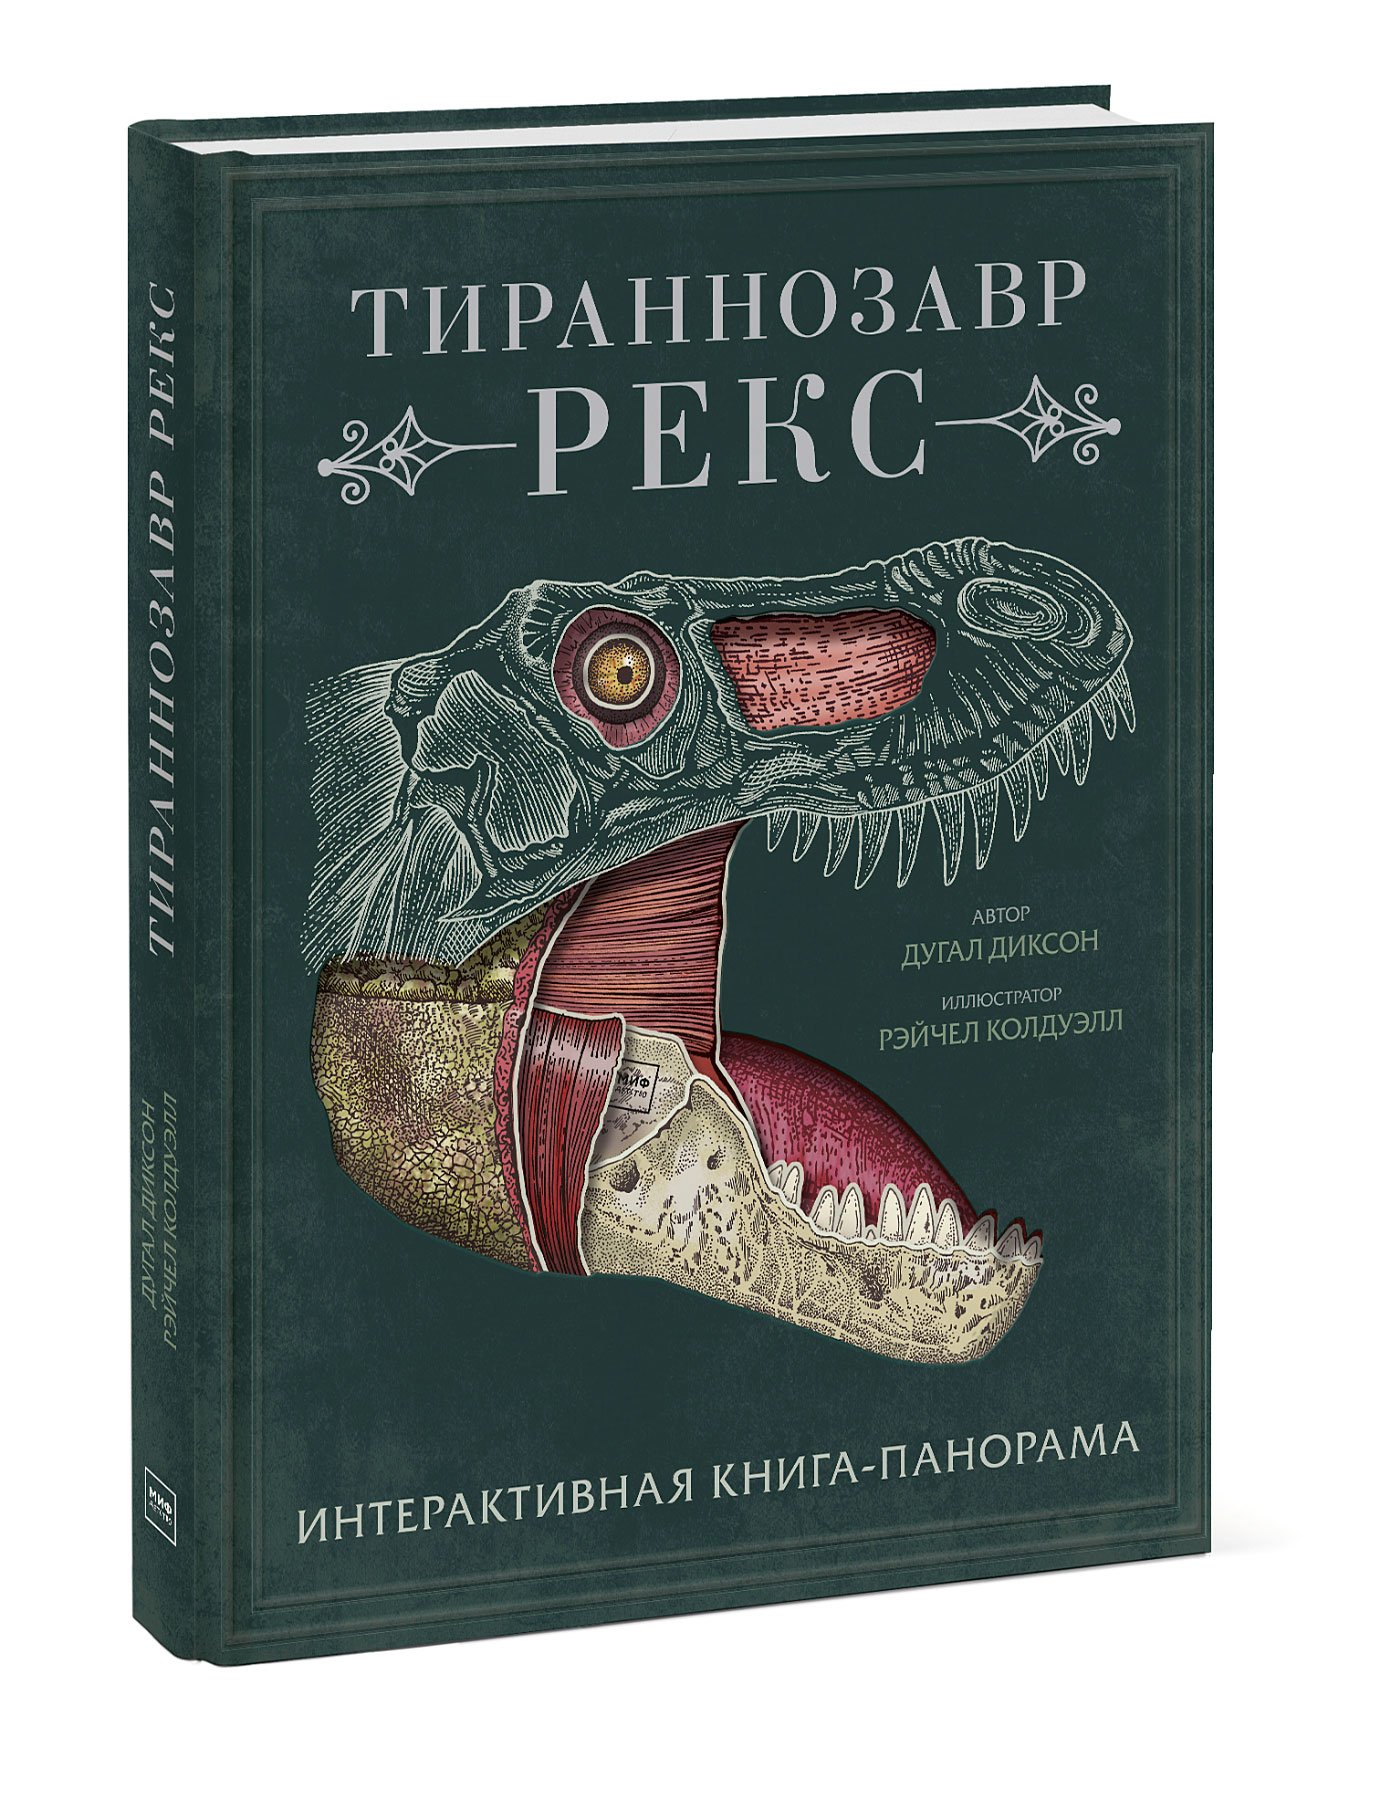 Zakazat.ru: Тираннозавр рекс. Интерактивная книга-панорама. Диксон Дугал